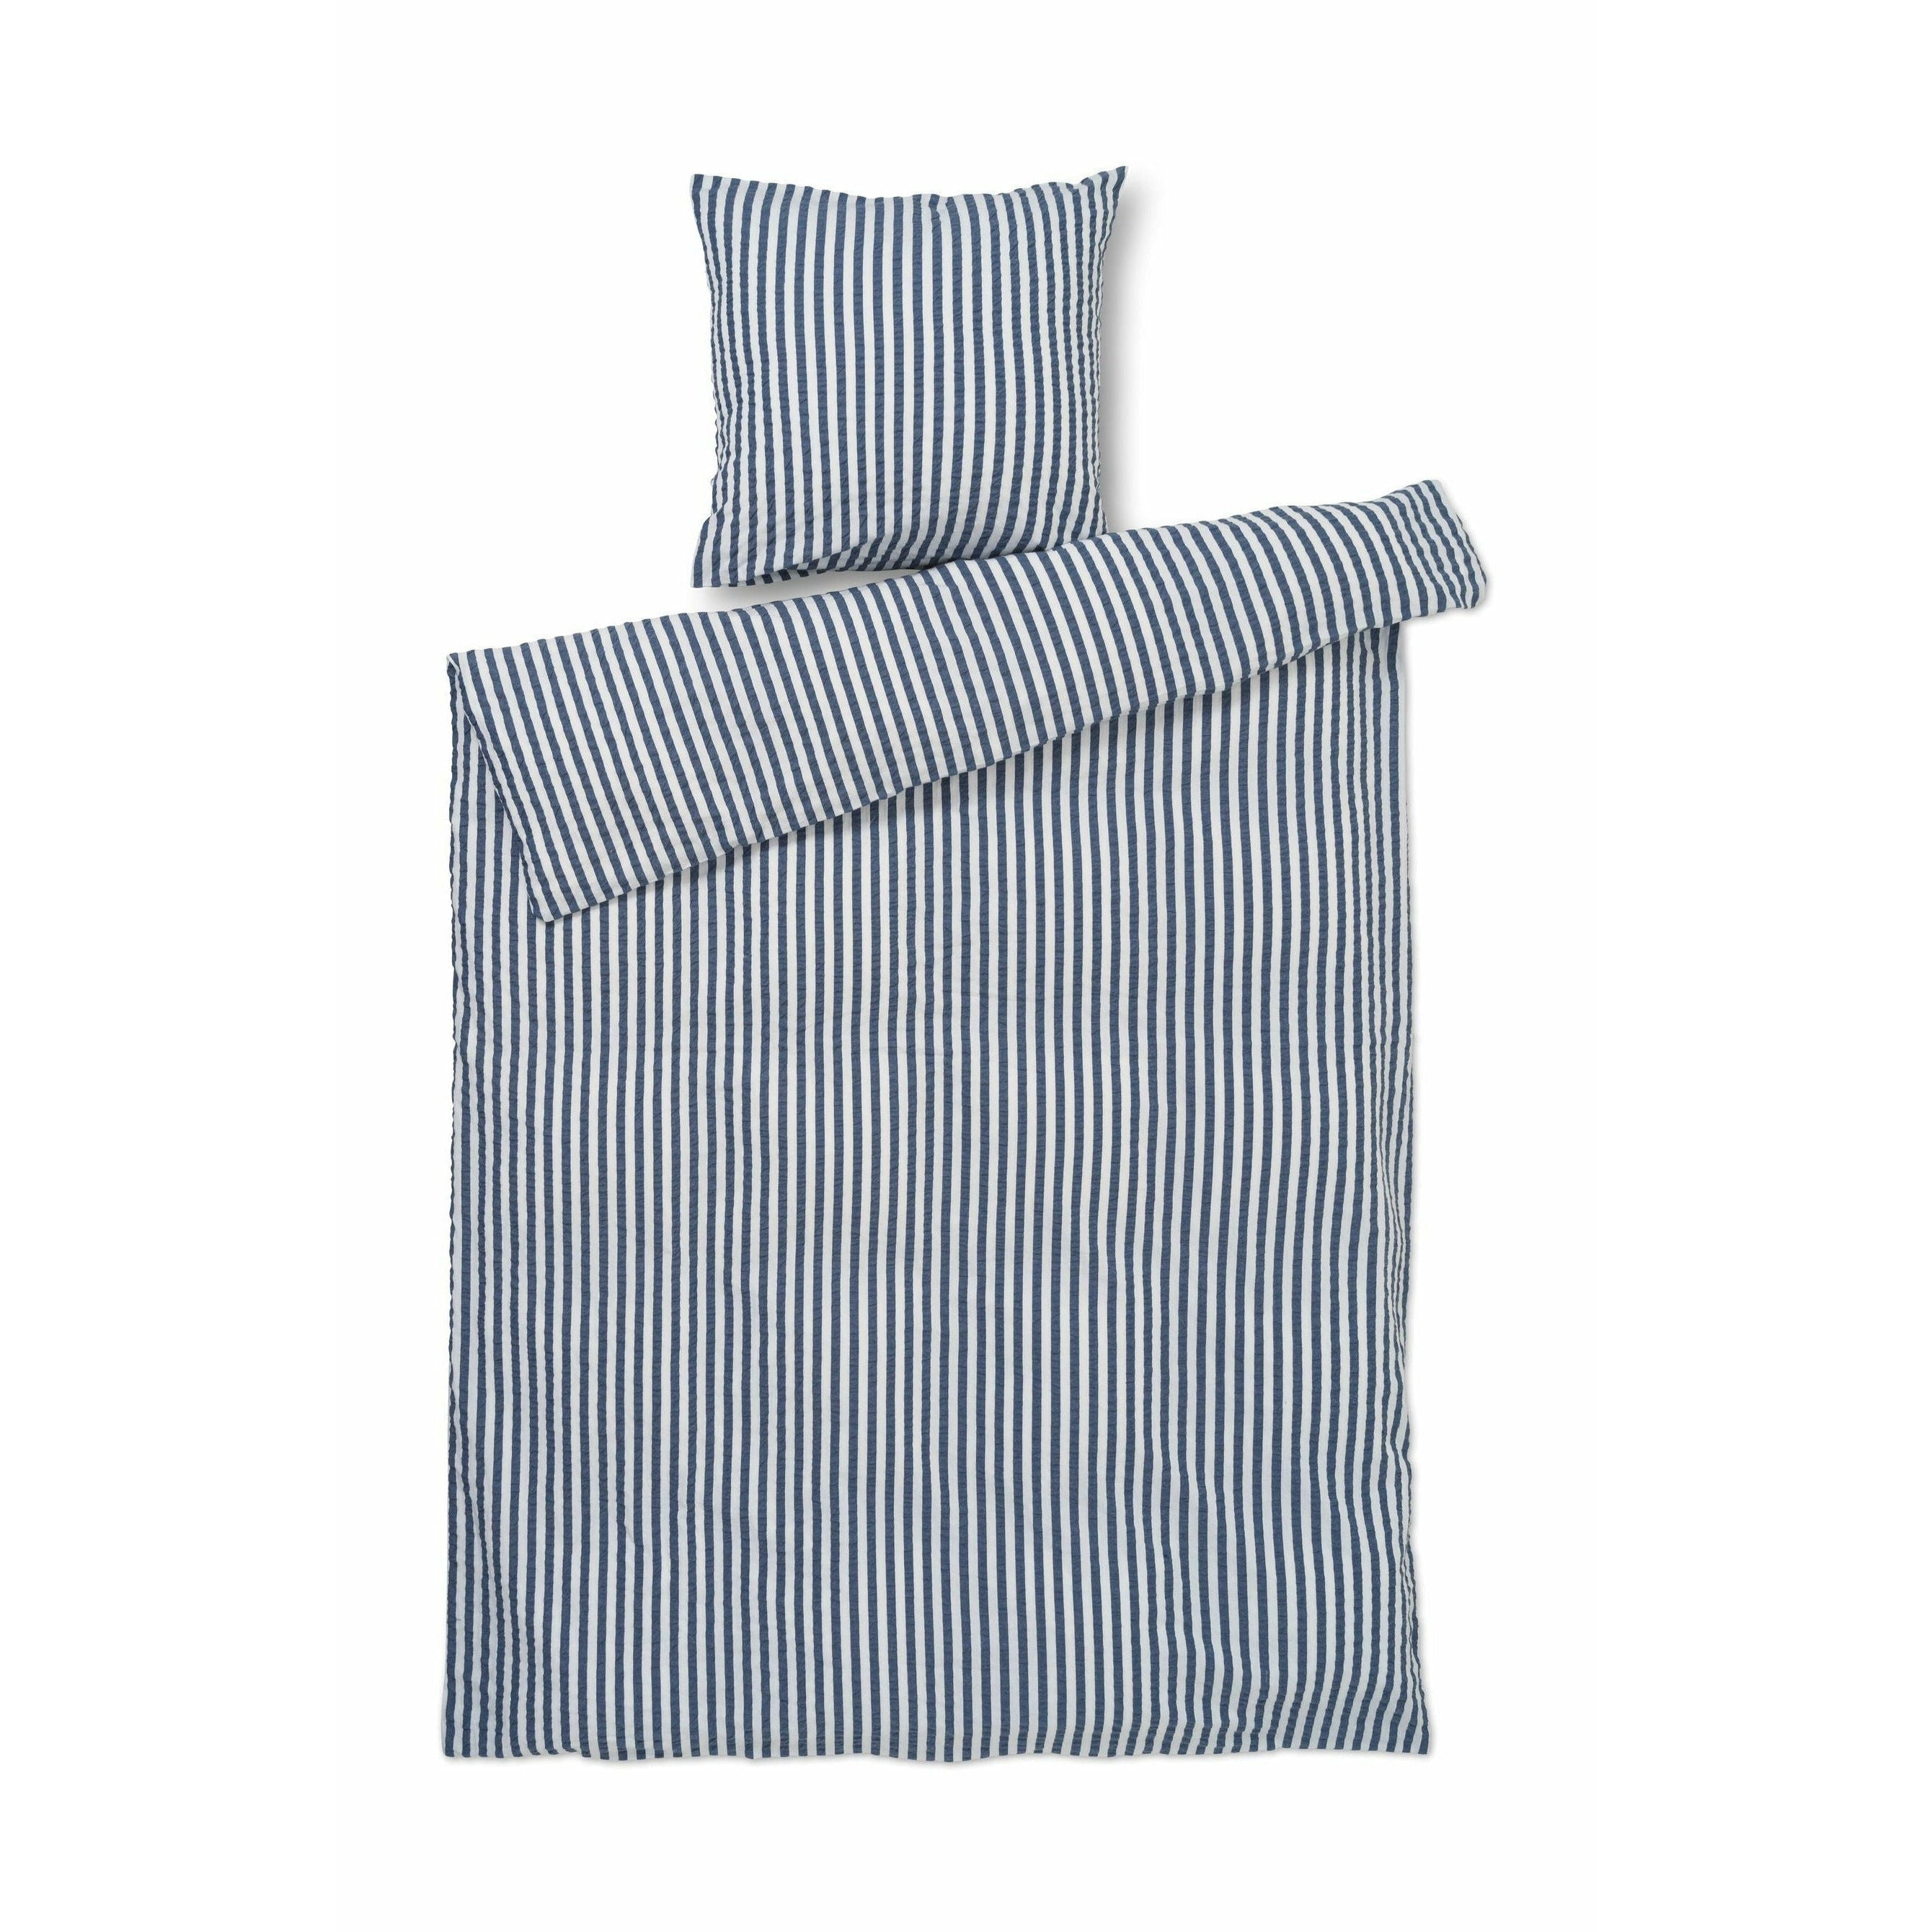 Juna Bæk & Bølge linjer sengelinned 140x220 cm, mørkeblå/hvid